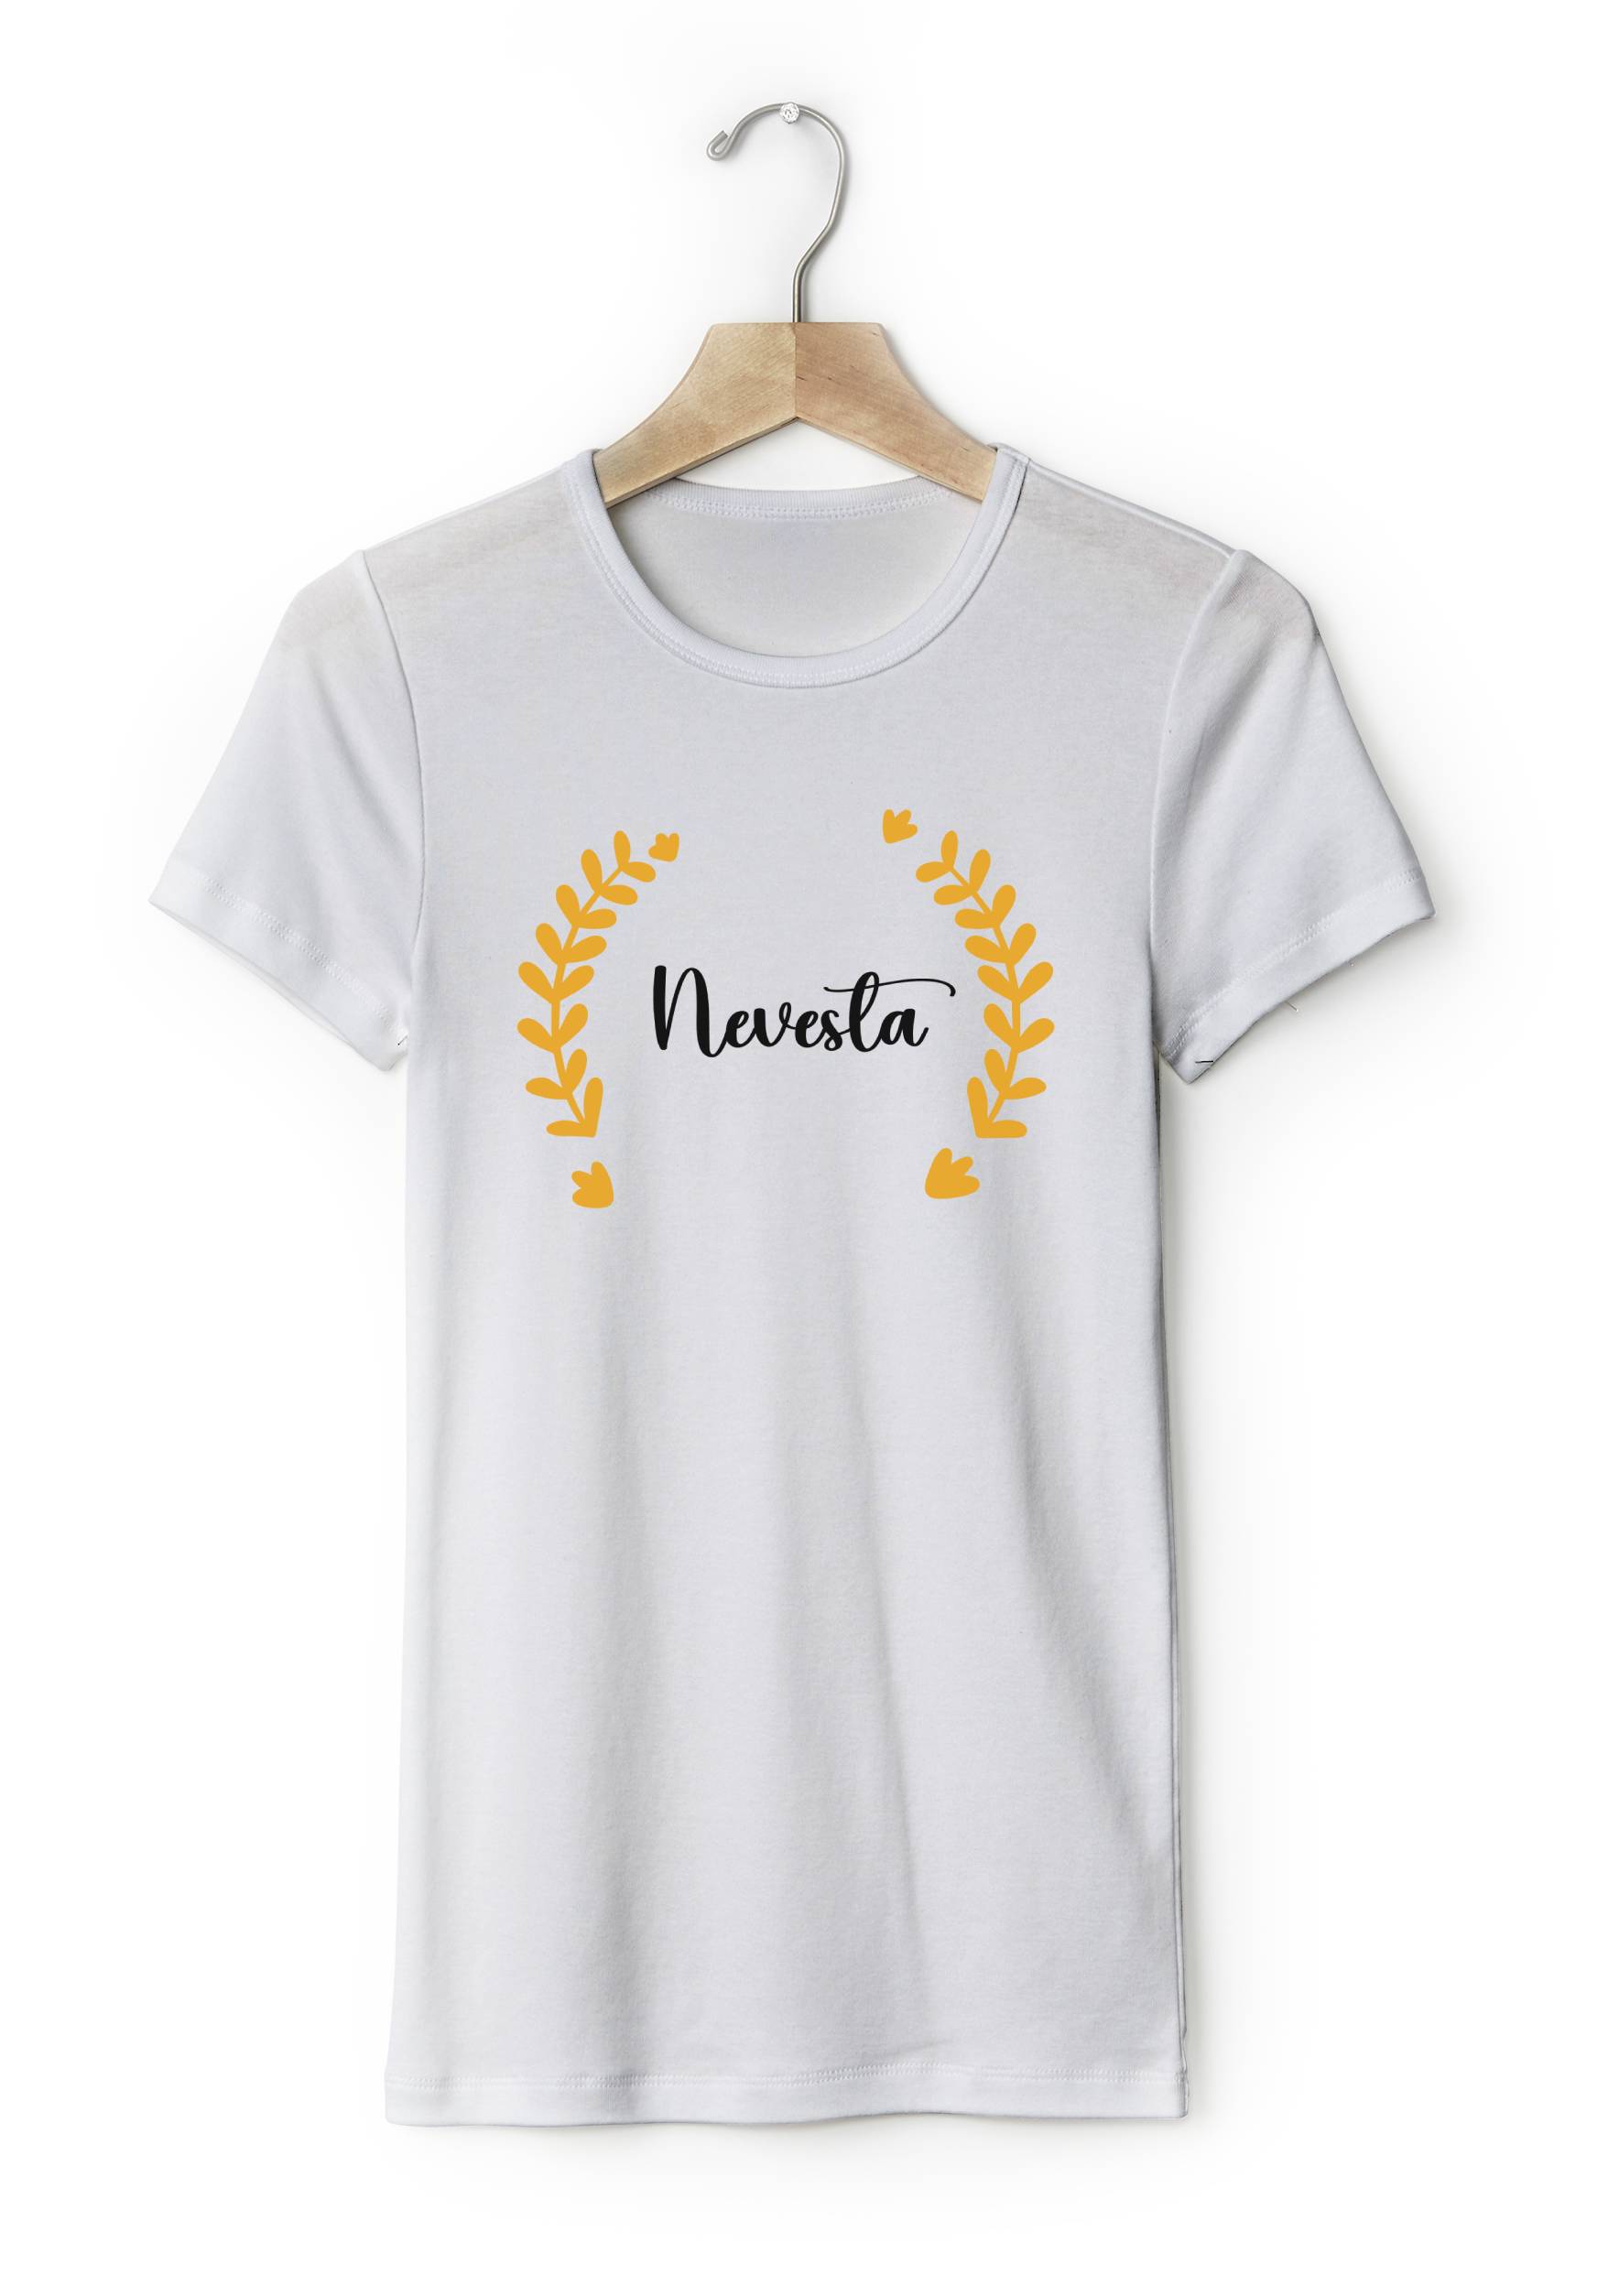 Personal Dámske tričko - Nevesta Elegant Farba: biela, Veľkosť - dospelý: M